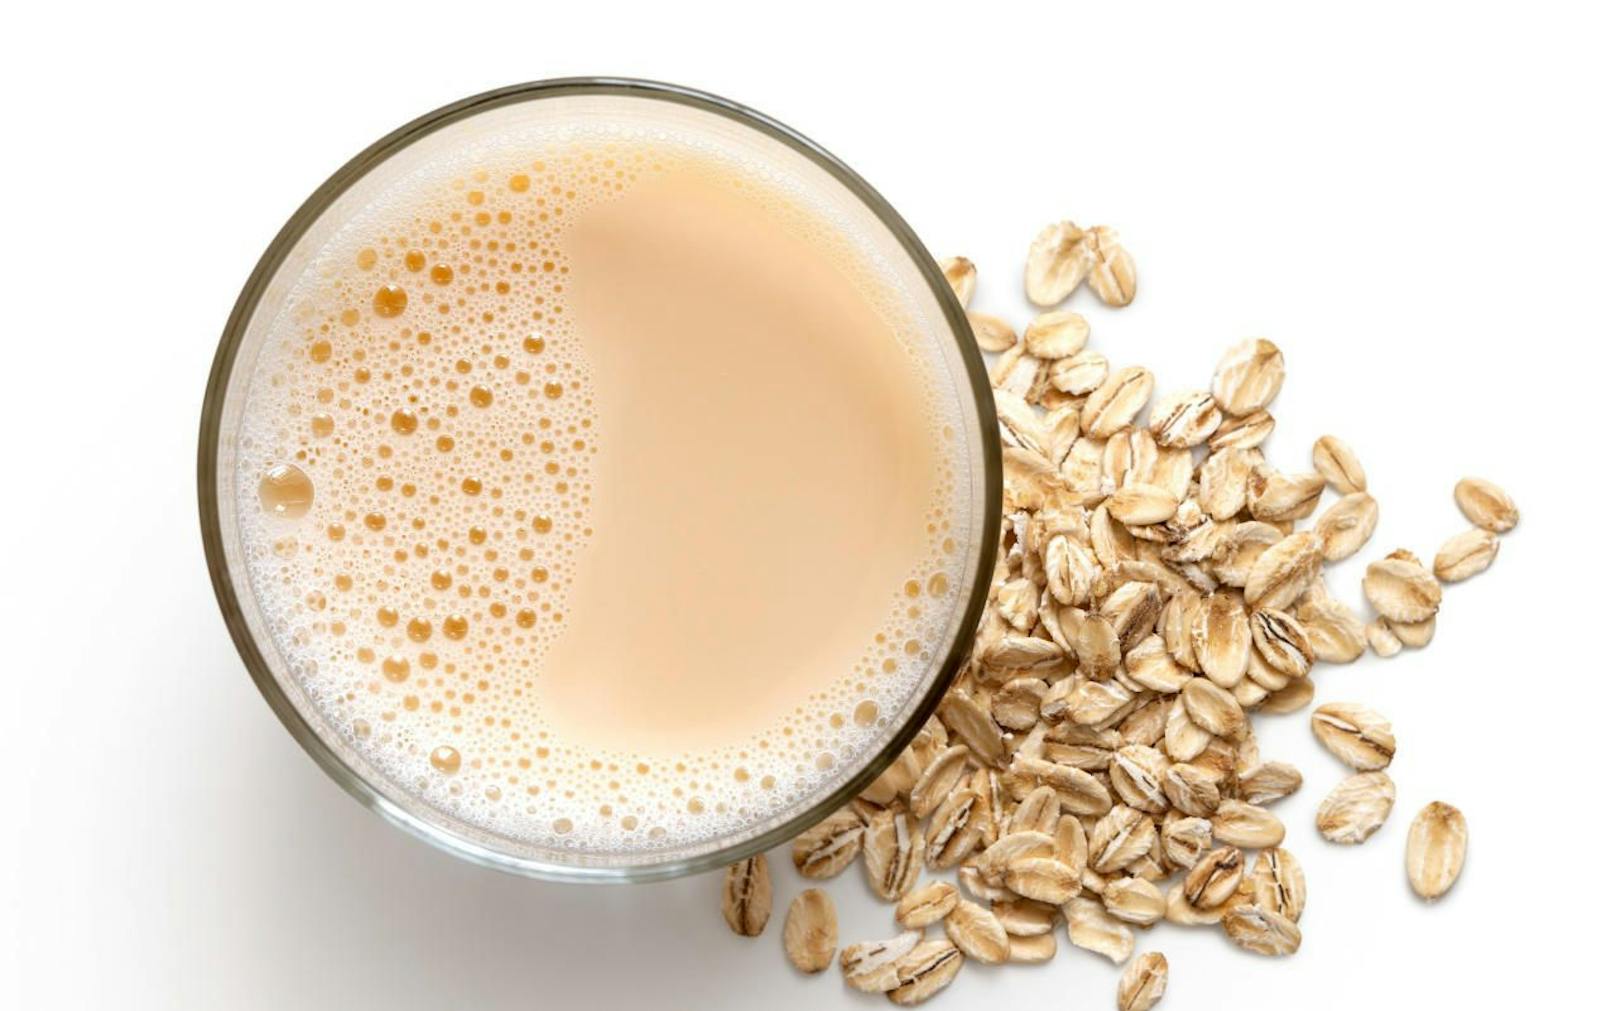 Als Milch dürfen laut Gesetz nur Lebens­mittel bezeichnet werden, die durch Melken aus dem Euter gewonnen werden. Pflanzlicher Milch­ersatz wird daher meist als Drink verkauft.